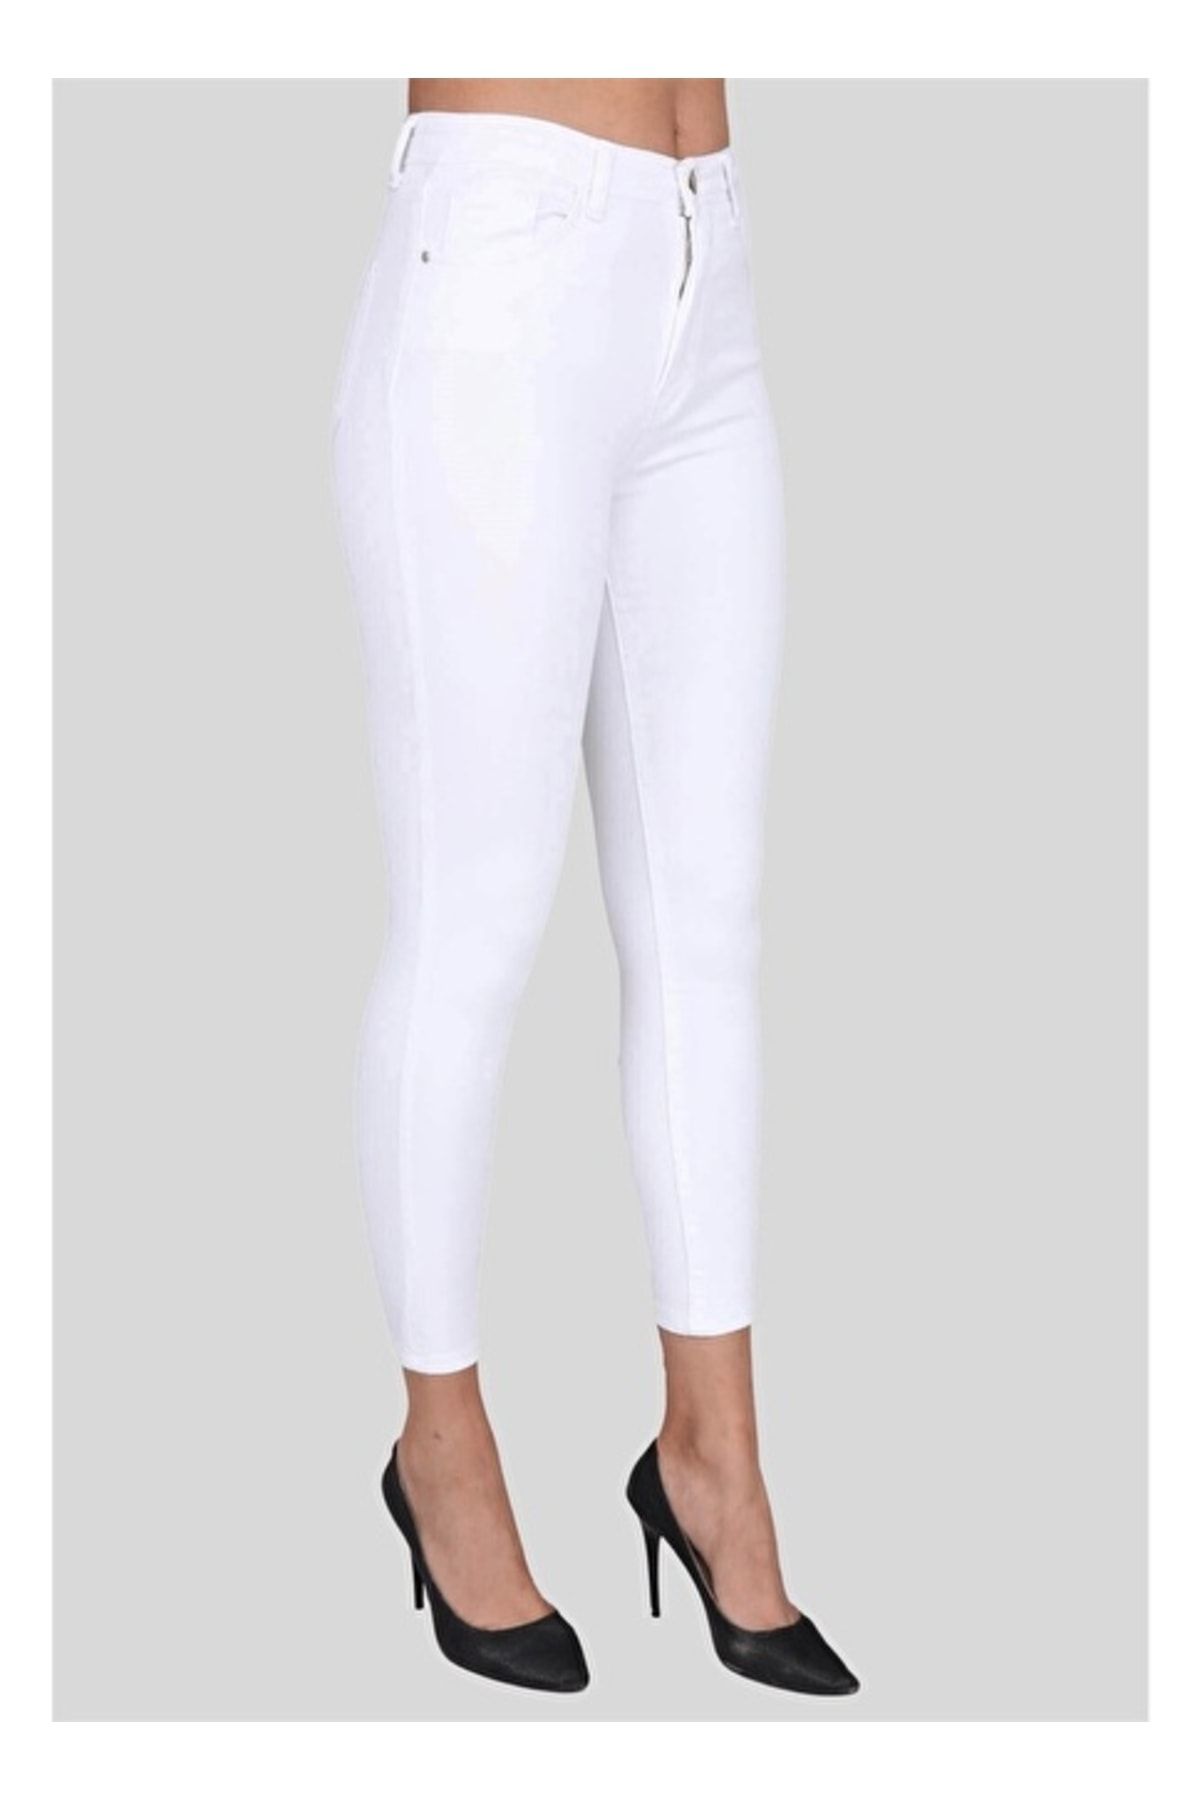 LAMİRA Kadın Beyaz Yüksek Bel Dar Paça Kot Pantolon